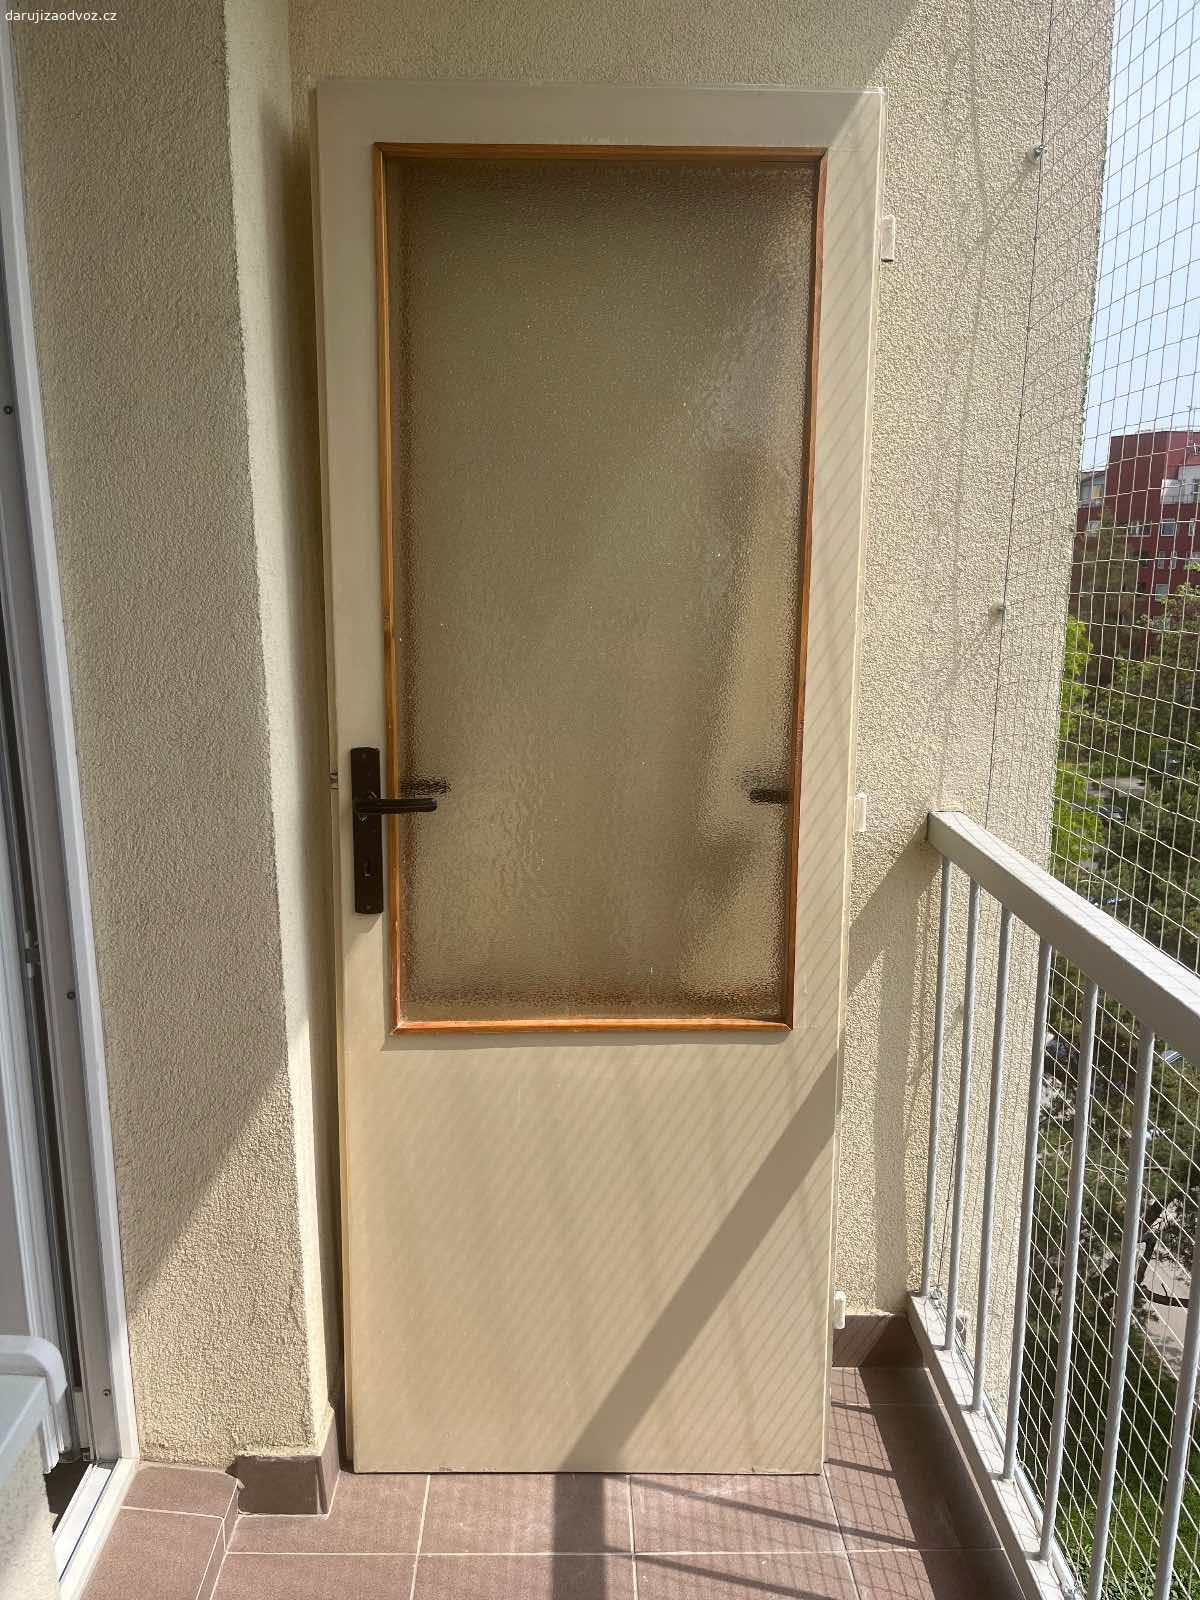 Retro prosklené dřevěné dveře 3x. Retro prosklené dřevěné dveře 3x
1x šířka 85 cm
2x šířka 73,5 cm